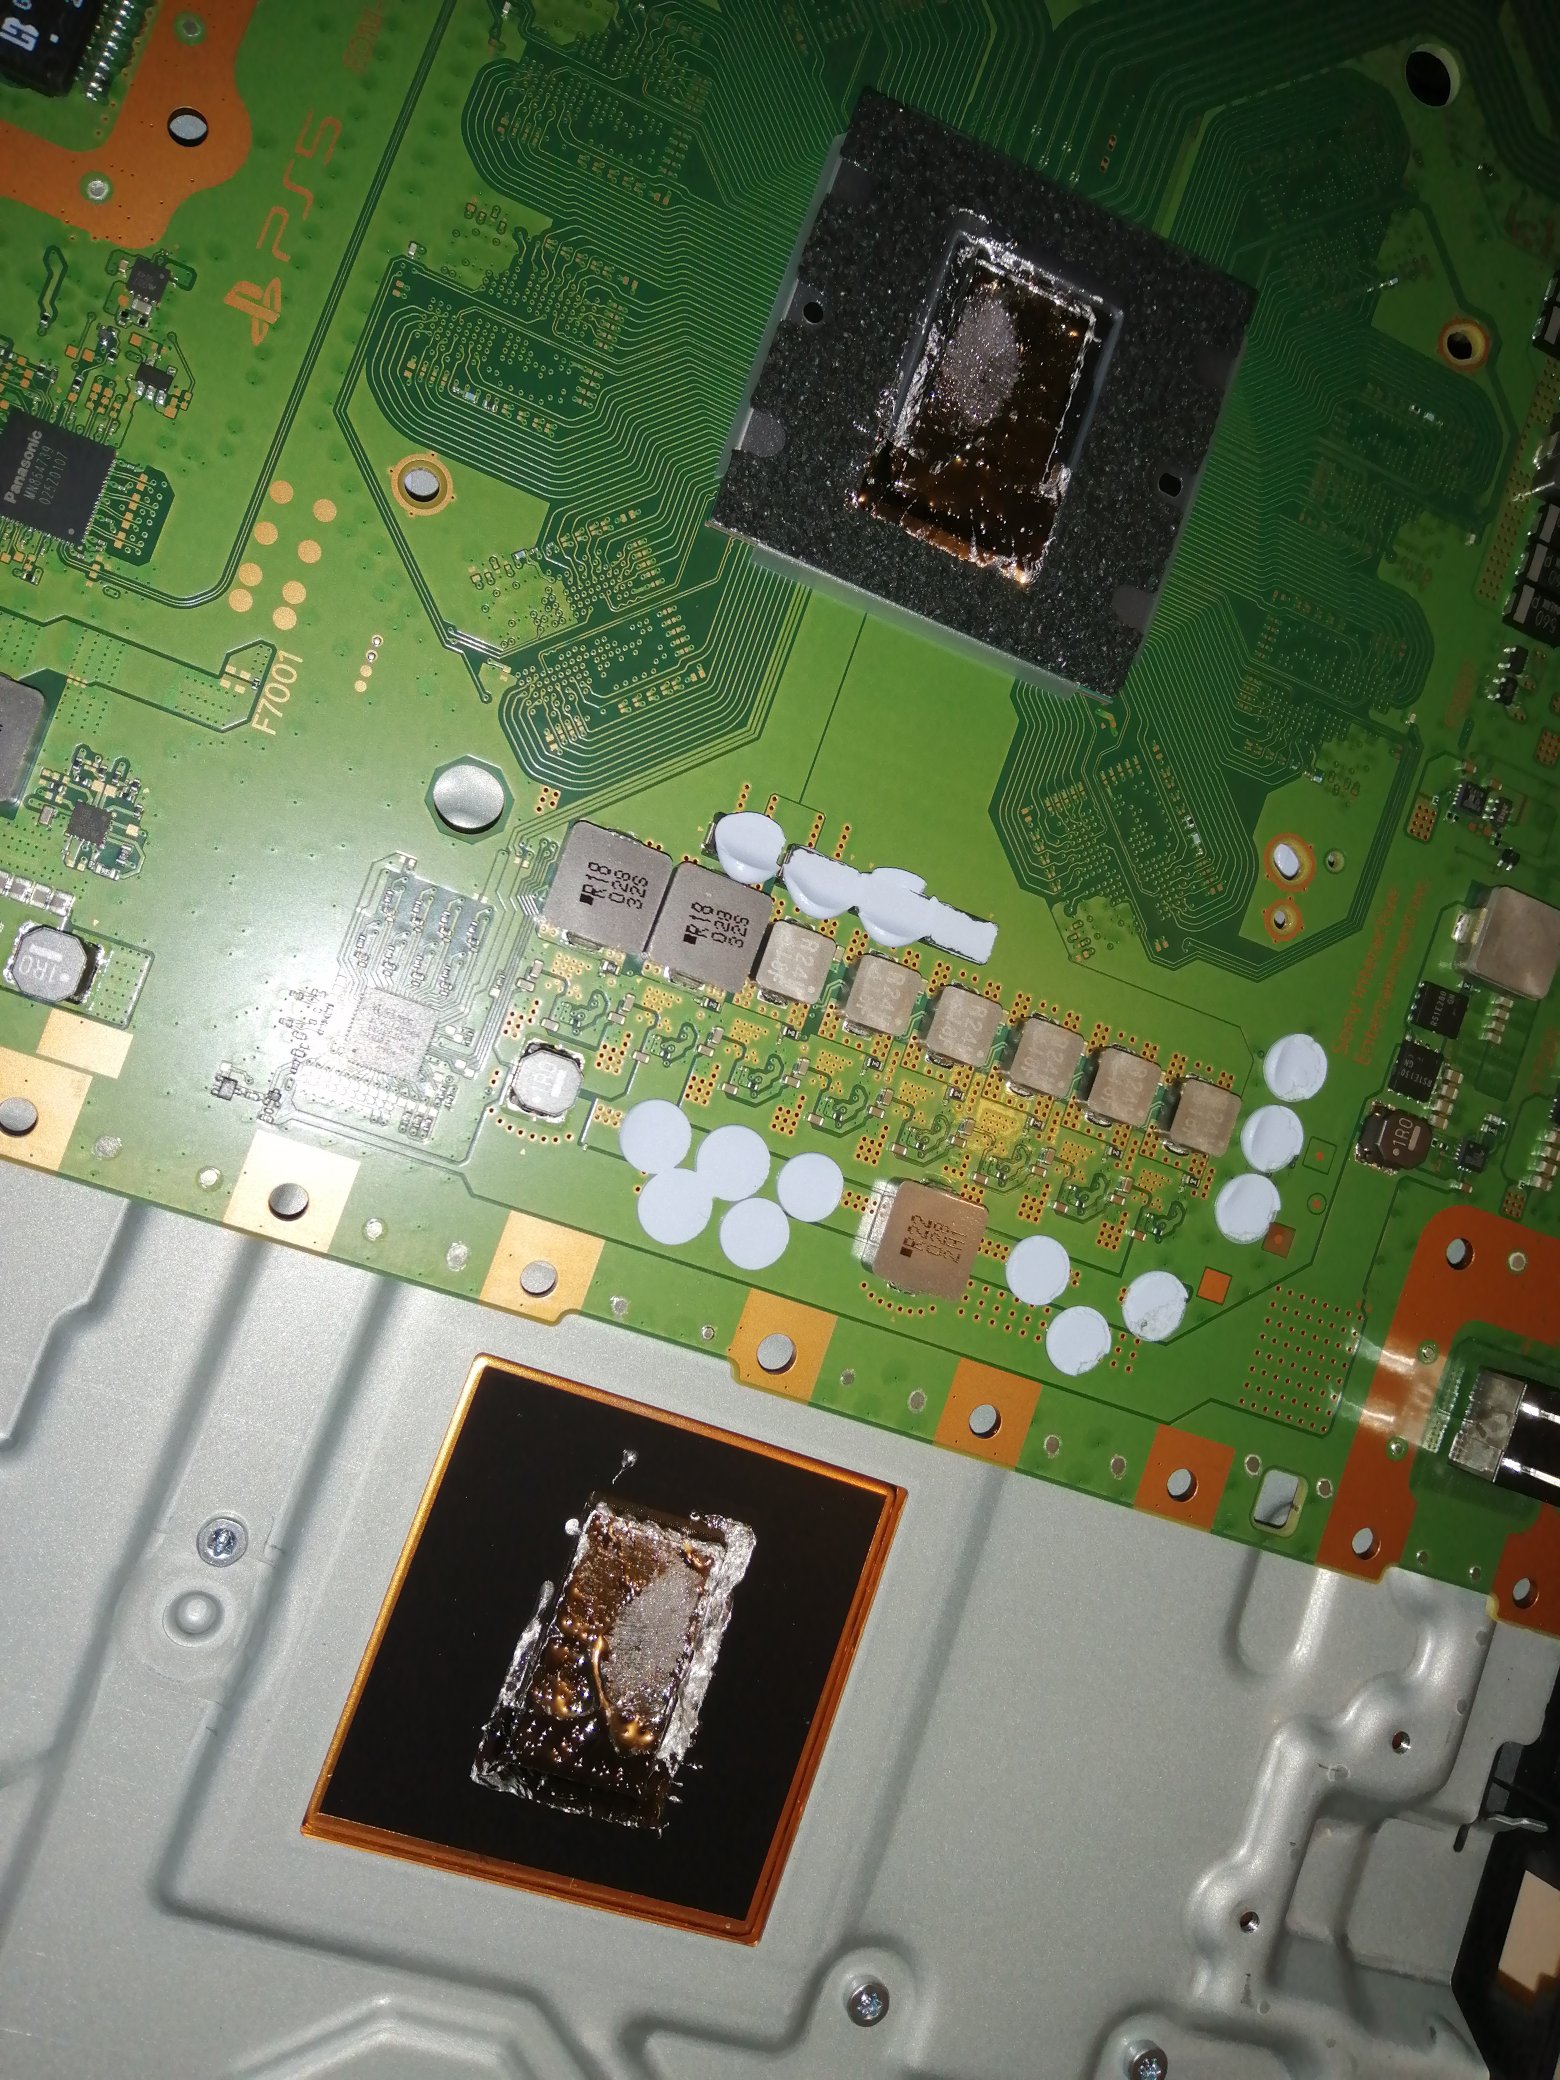 垂直放置 PS5 可能会导致硬件故障